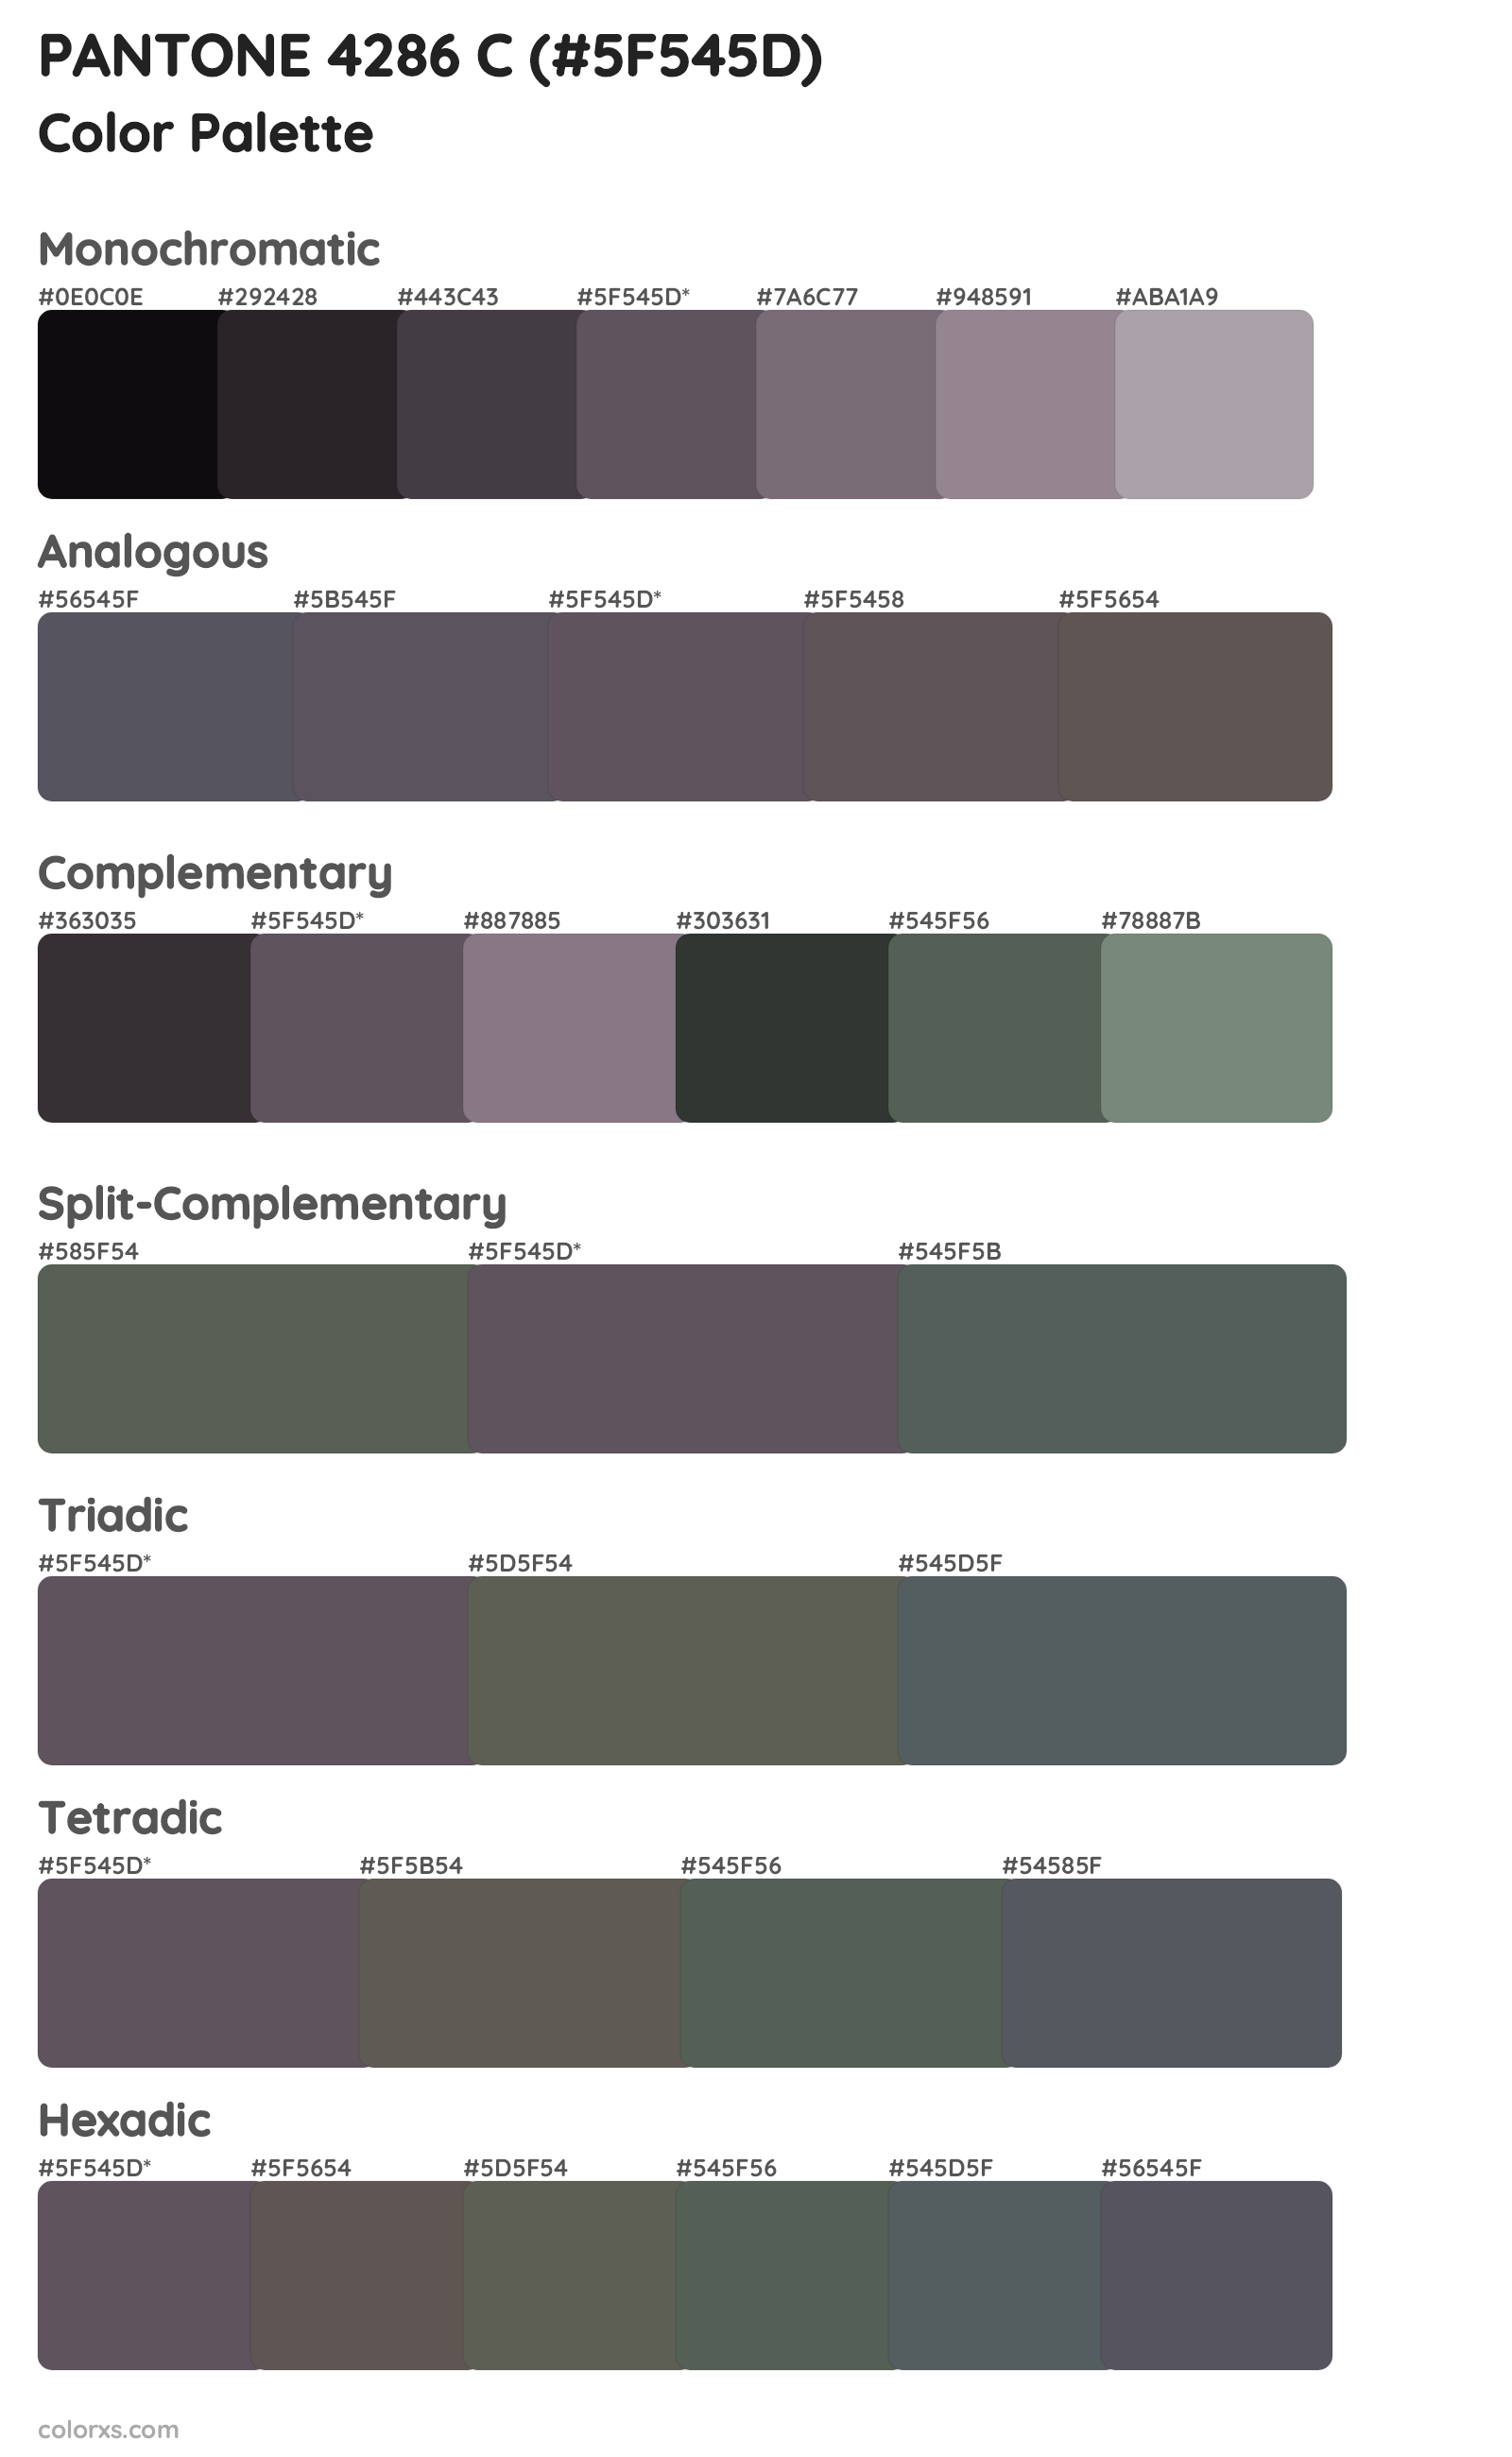 PANTONE 4286 C Color Scheme Palettes